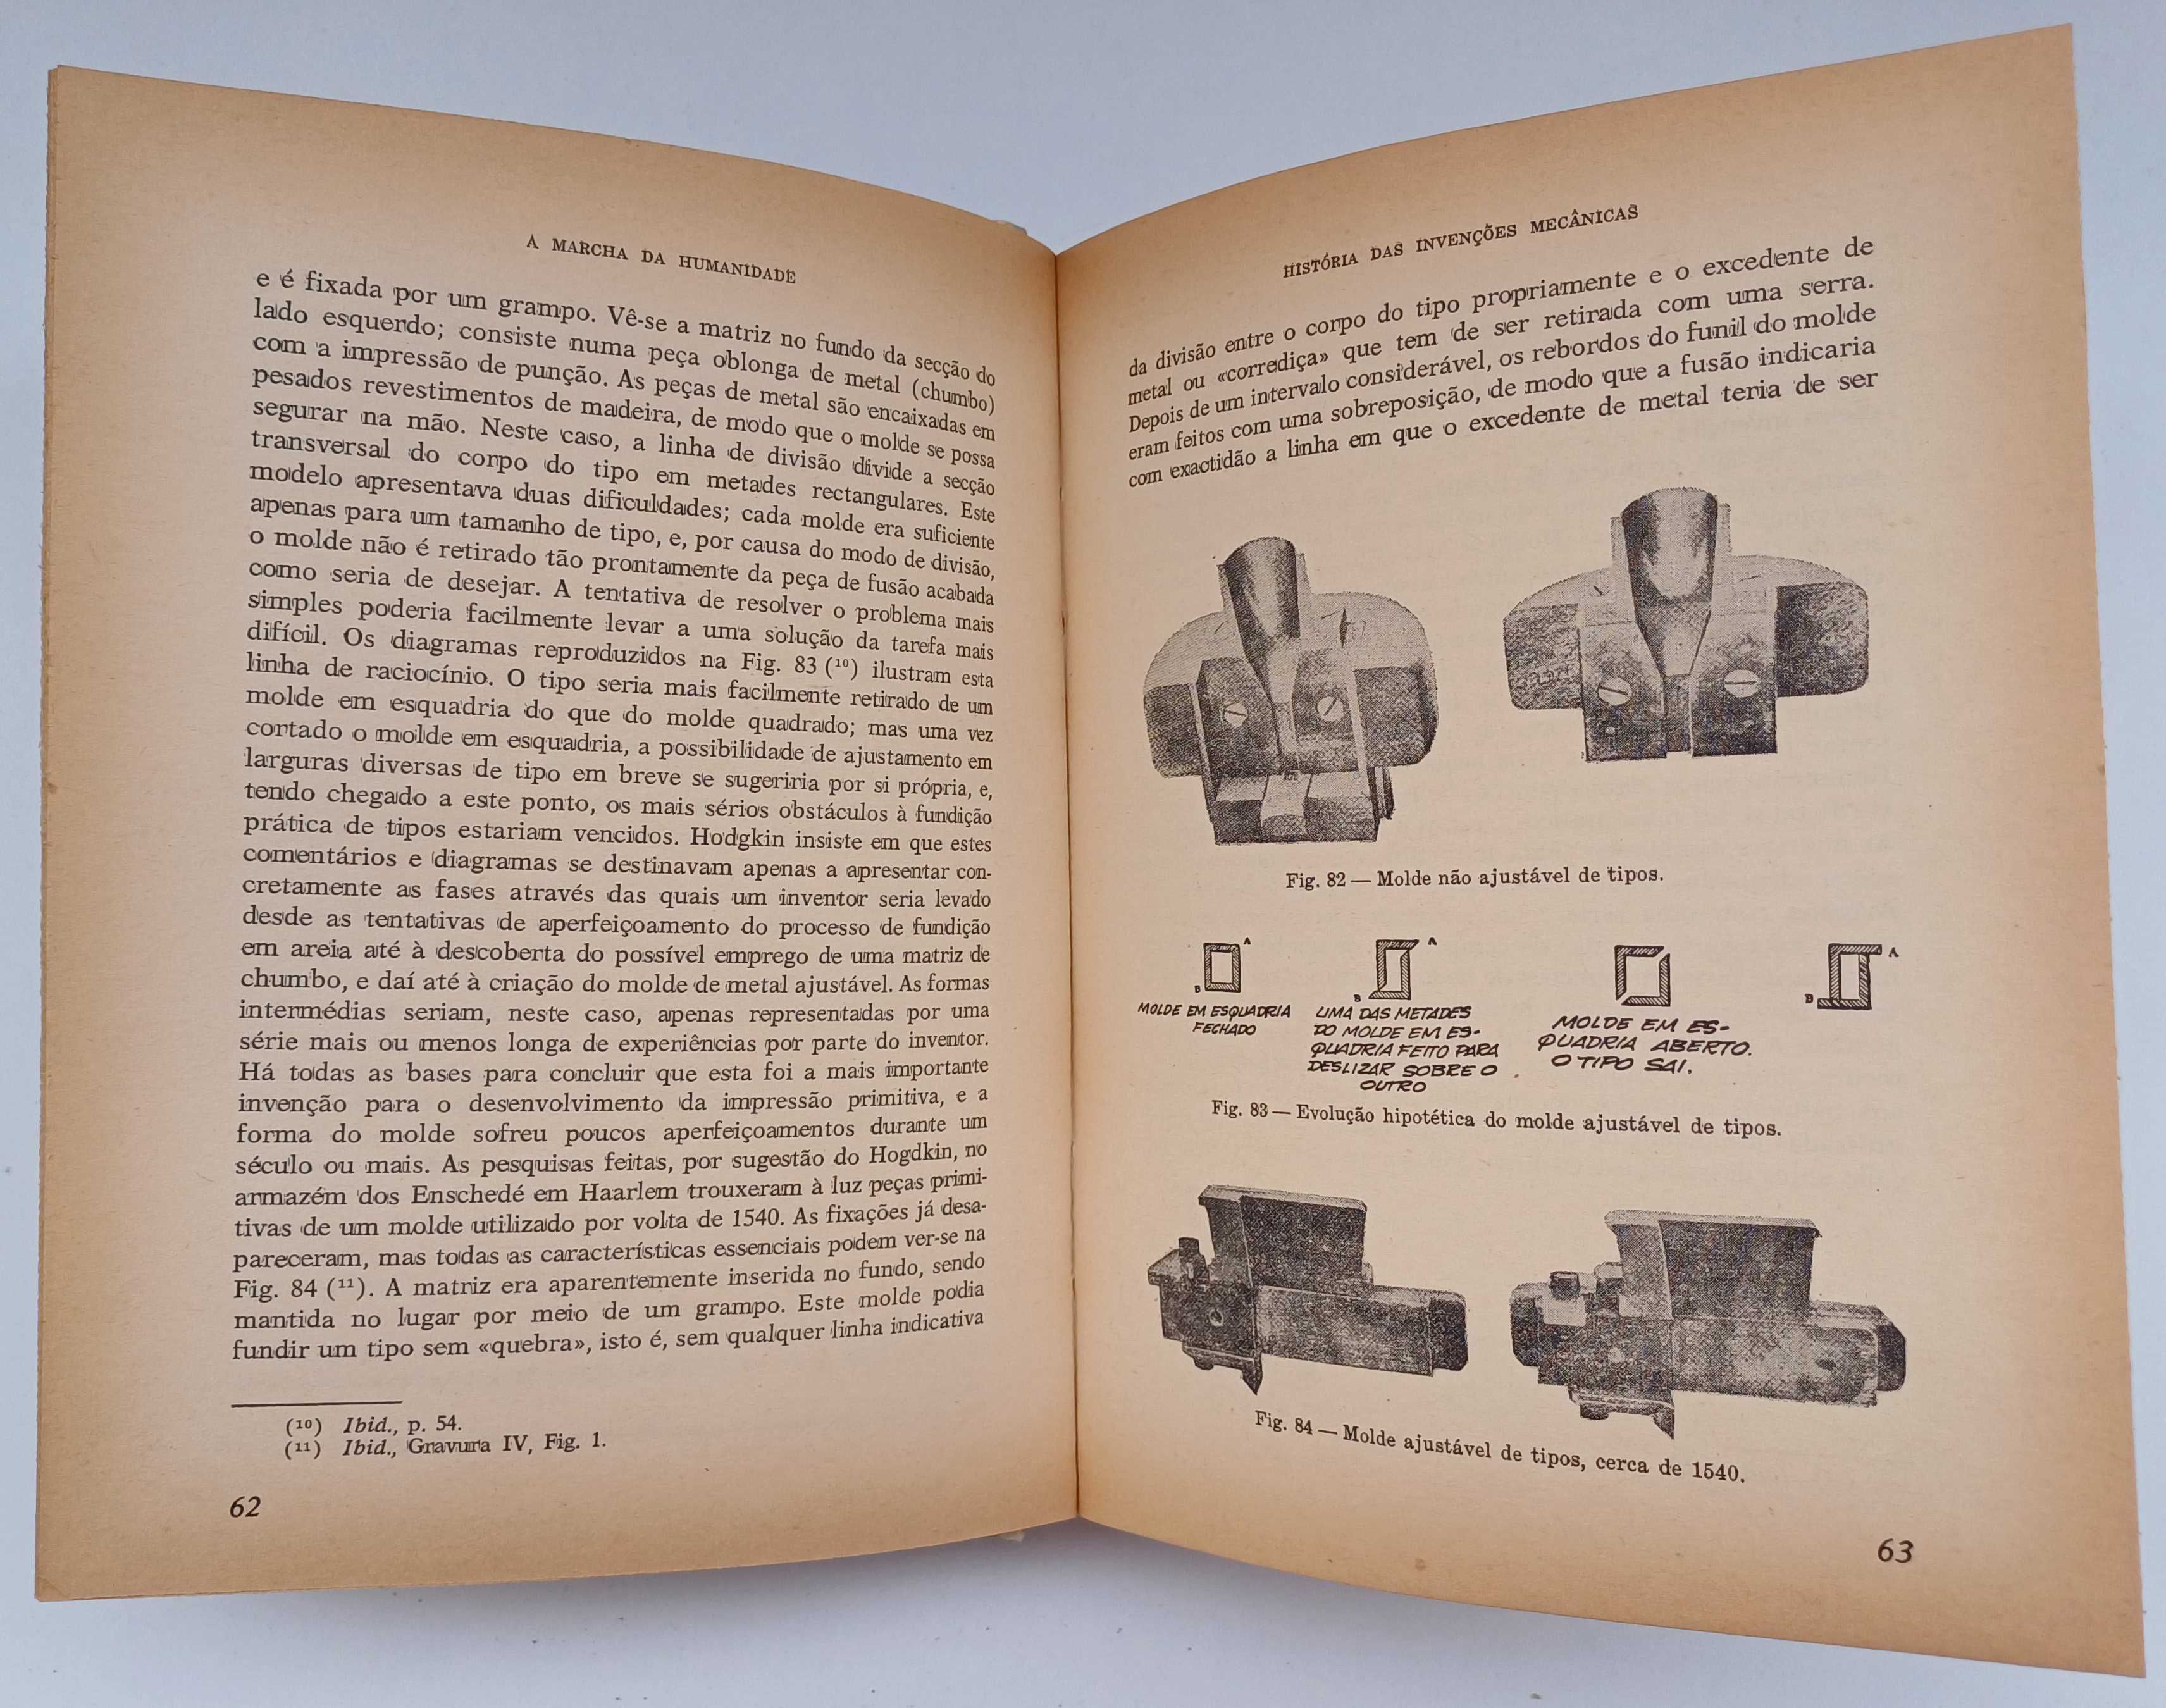 História das invenções mecânicas – 2 Volumes